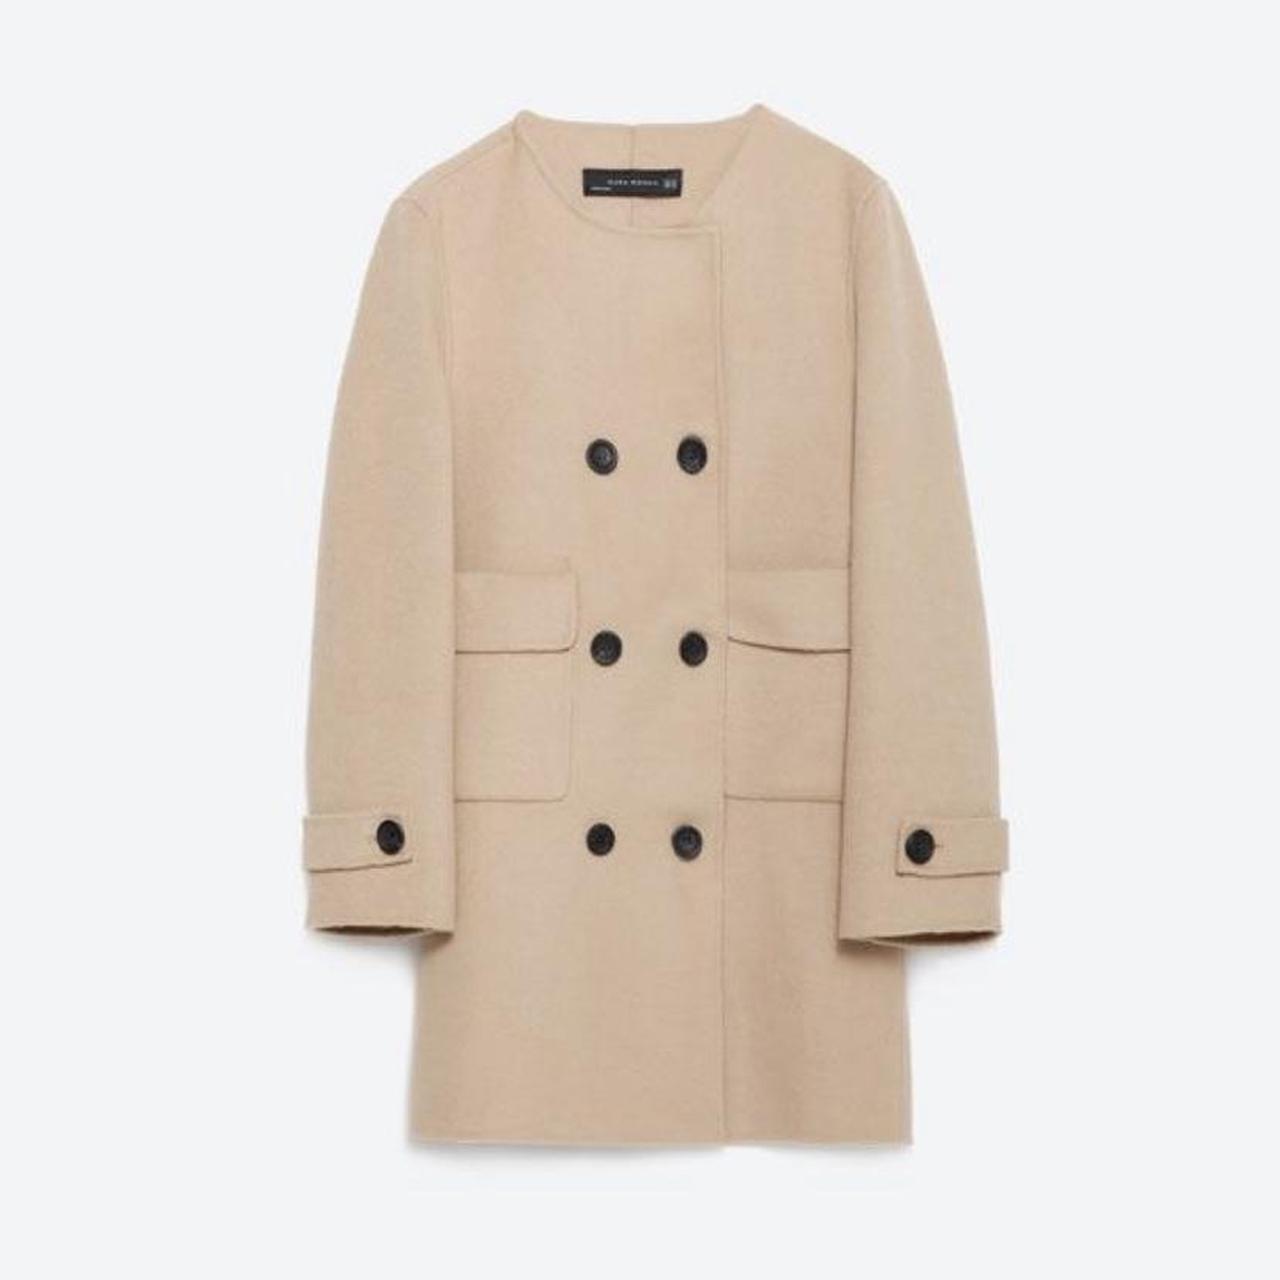 Zara beige short coat with double black buttons in... - Depop